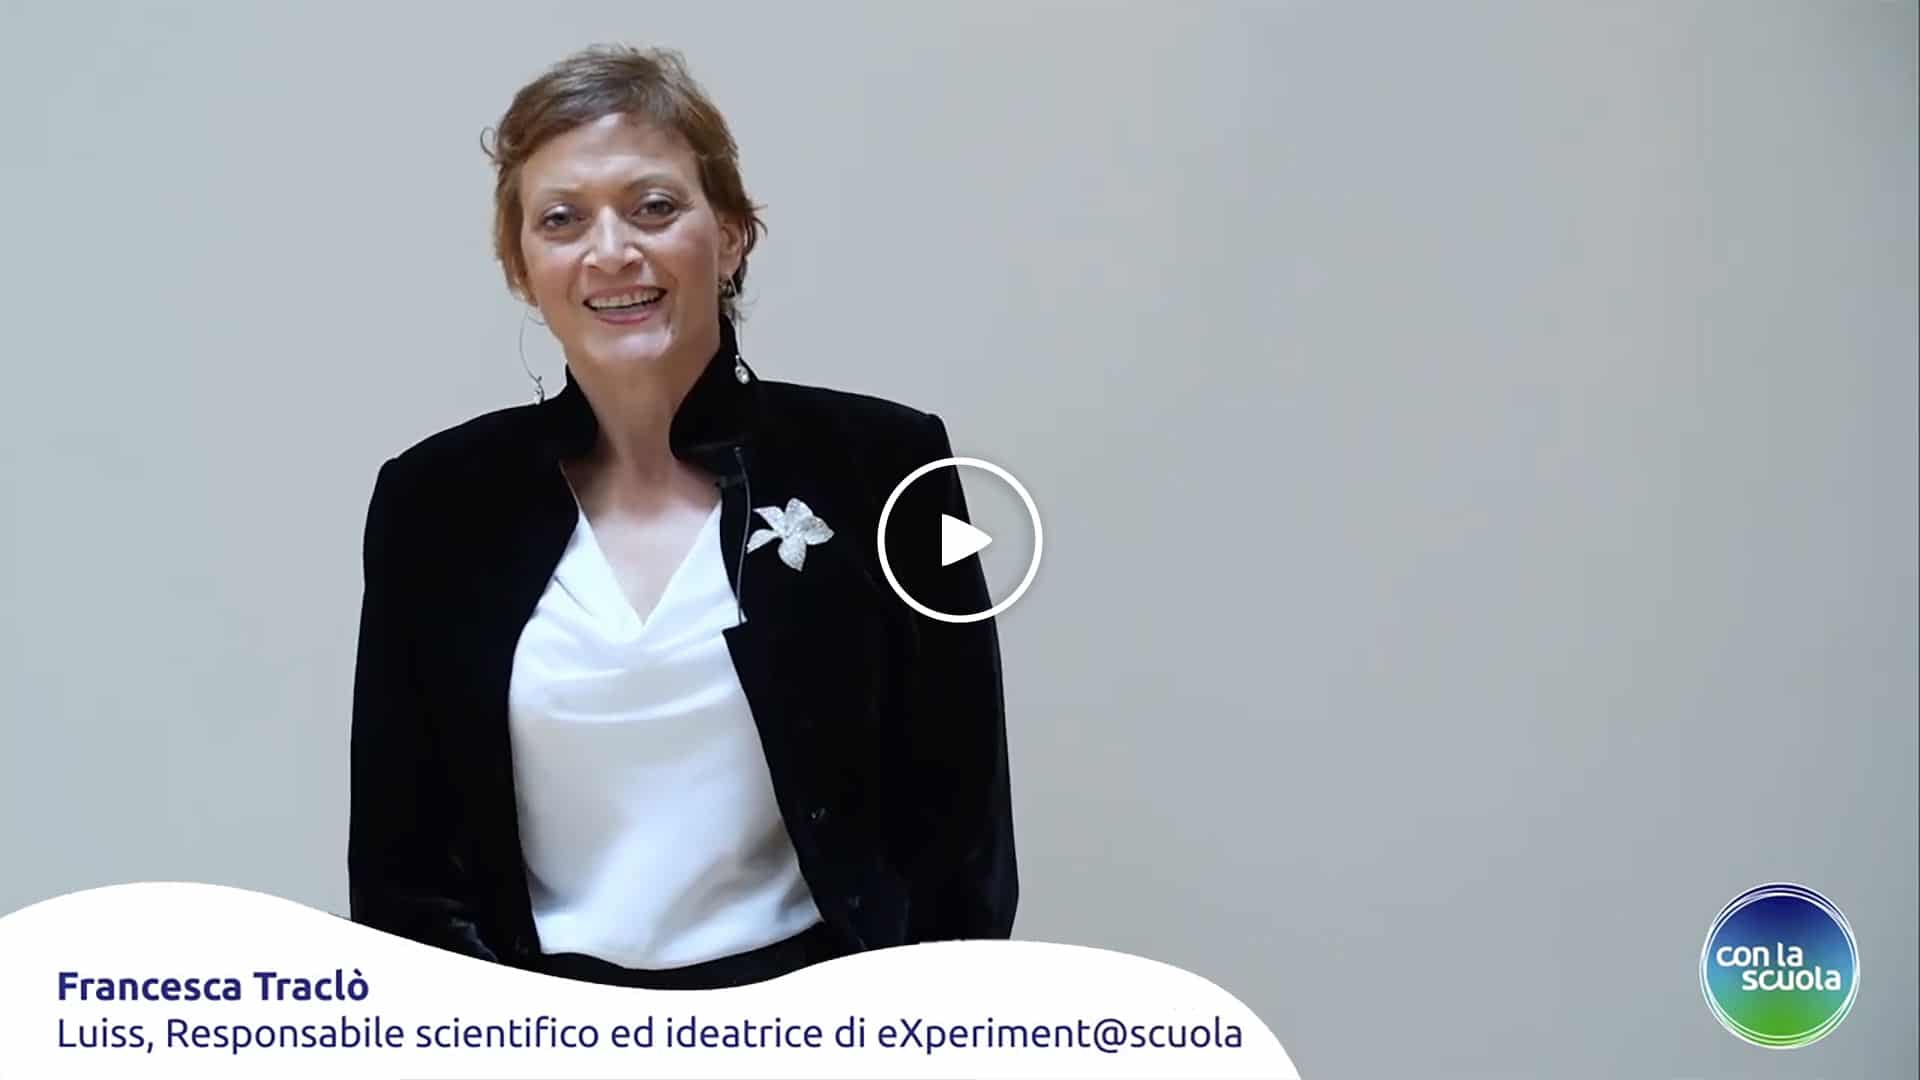 Testimonianze Con la Scuola - Francesca Traclò, Responsabile scientifico Luiss e ideatrice di eXperiment@scuola